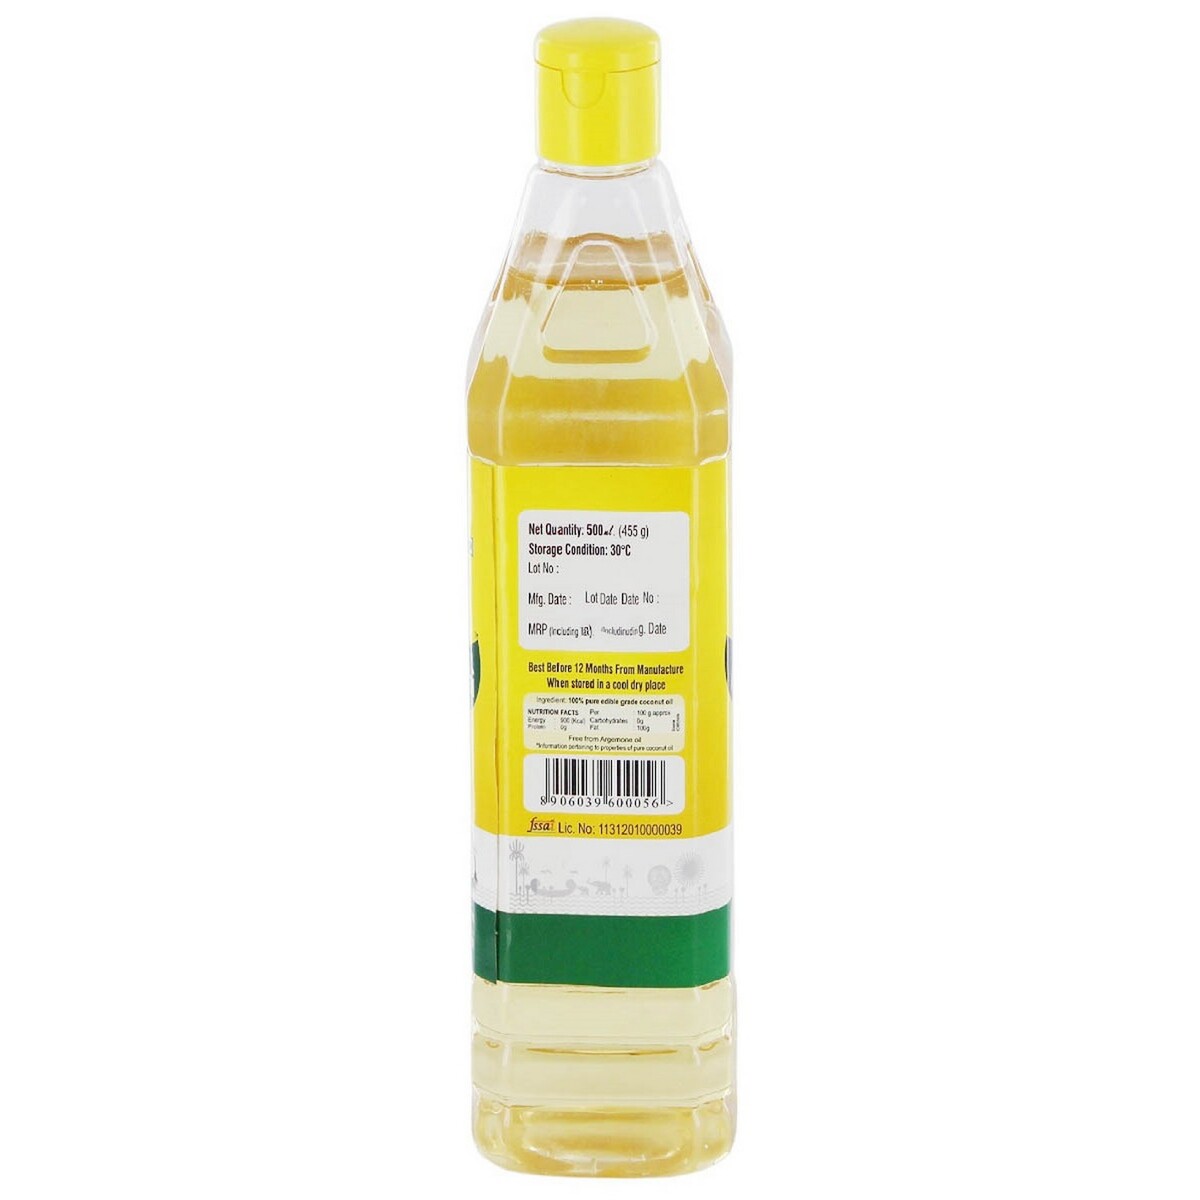 Samthrupthi Coconut Oil Pet Bottle 500ml